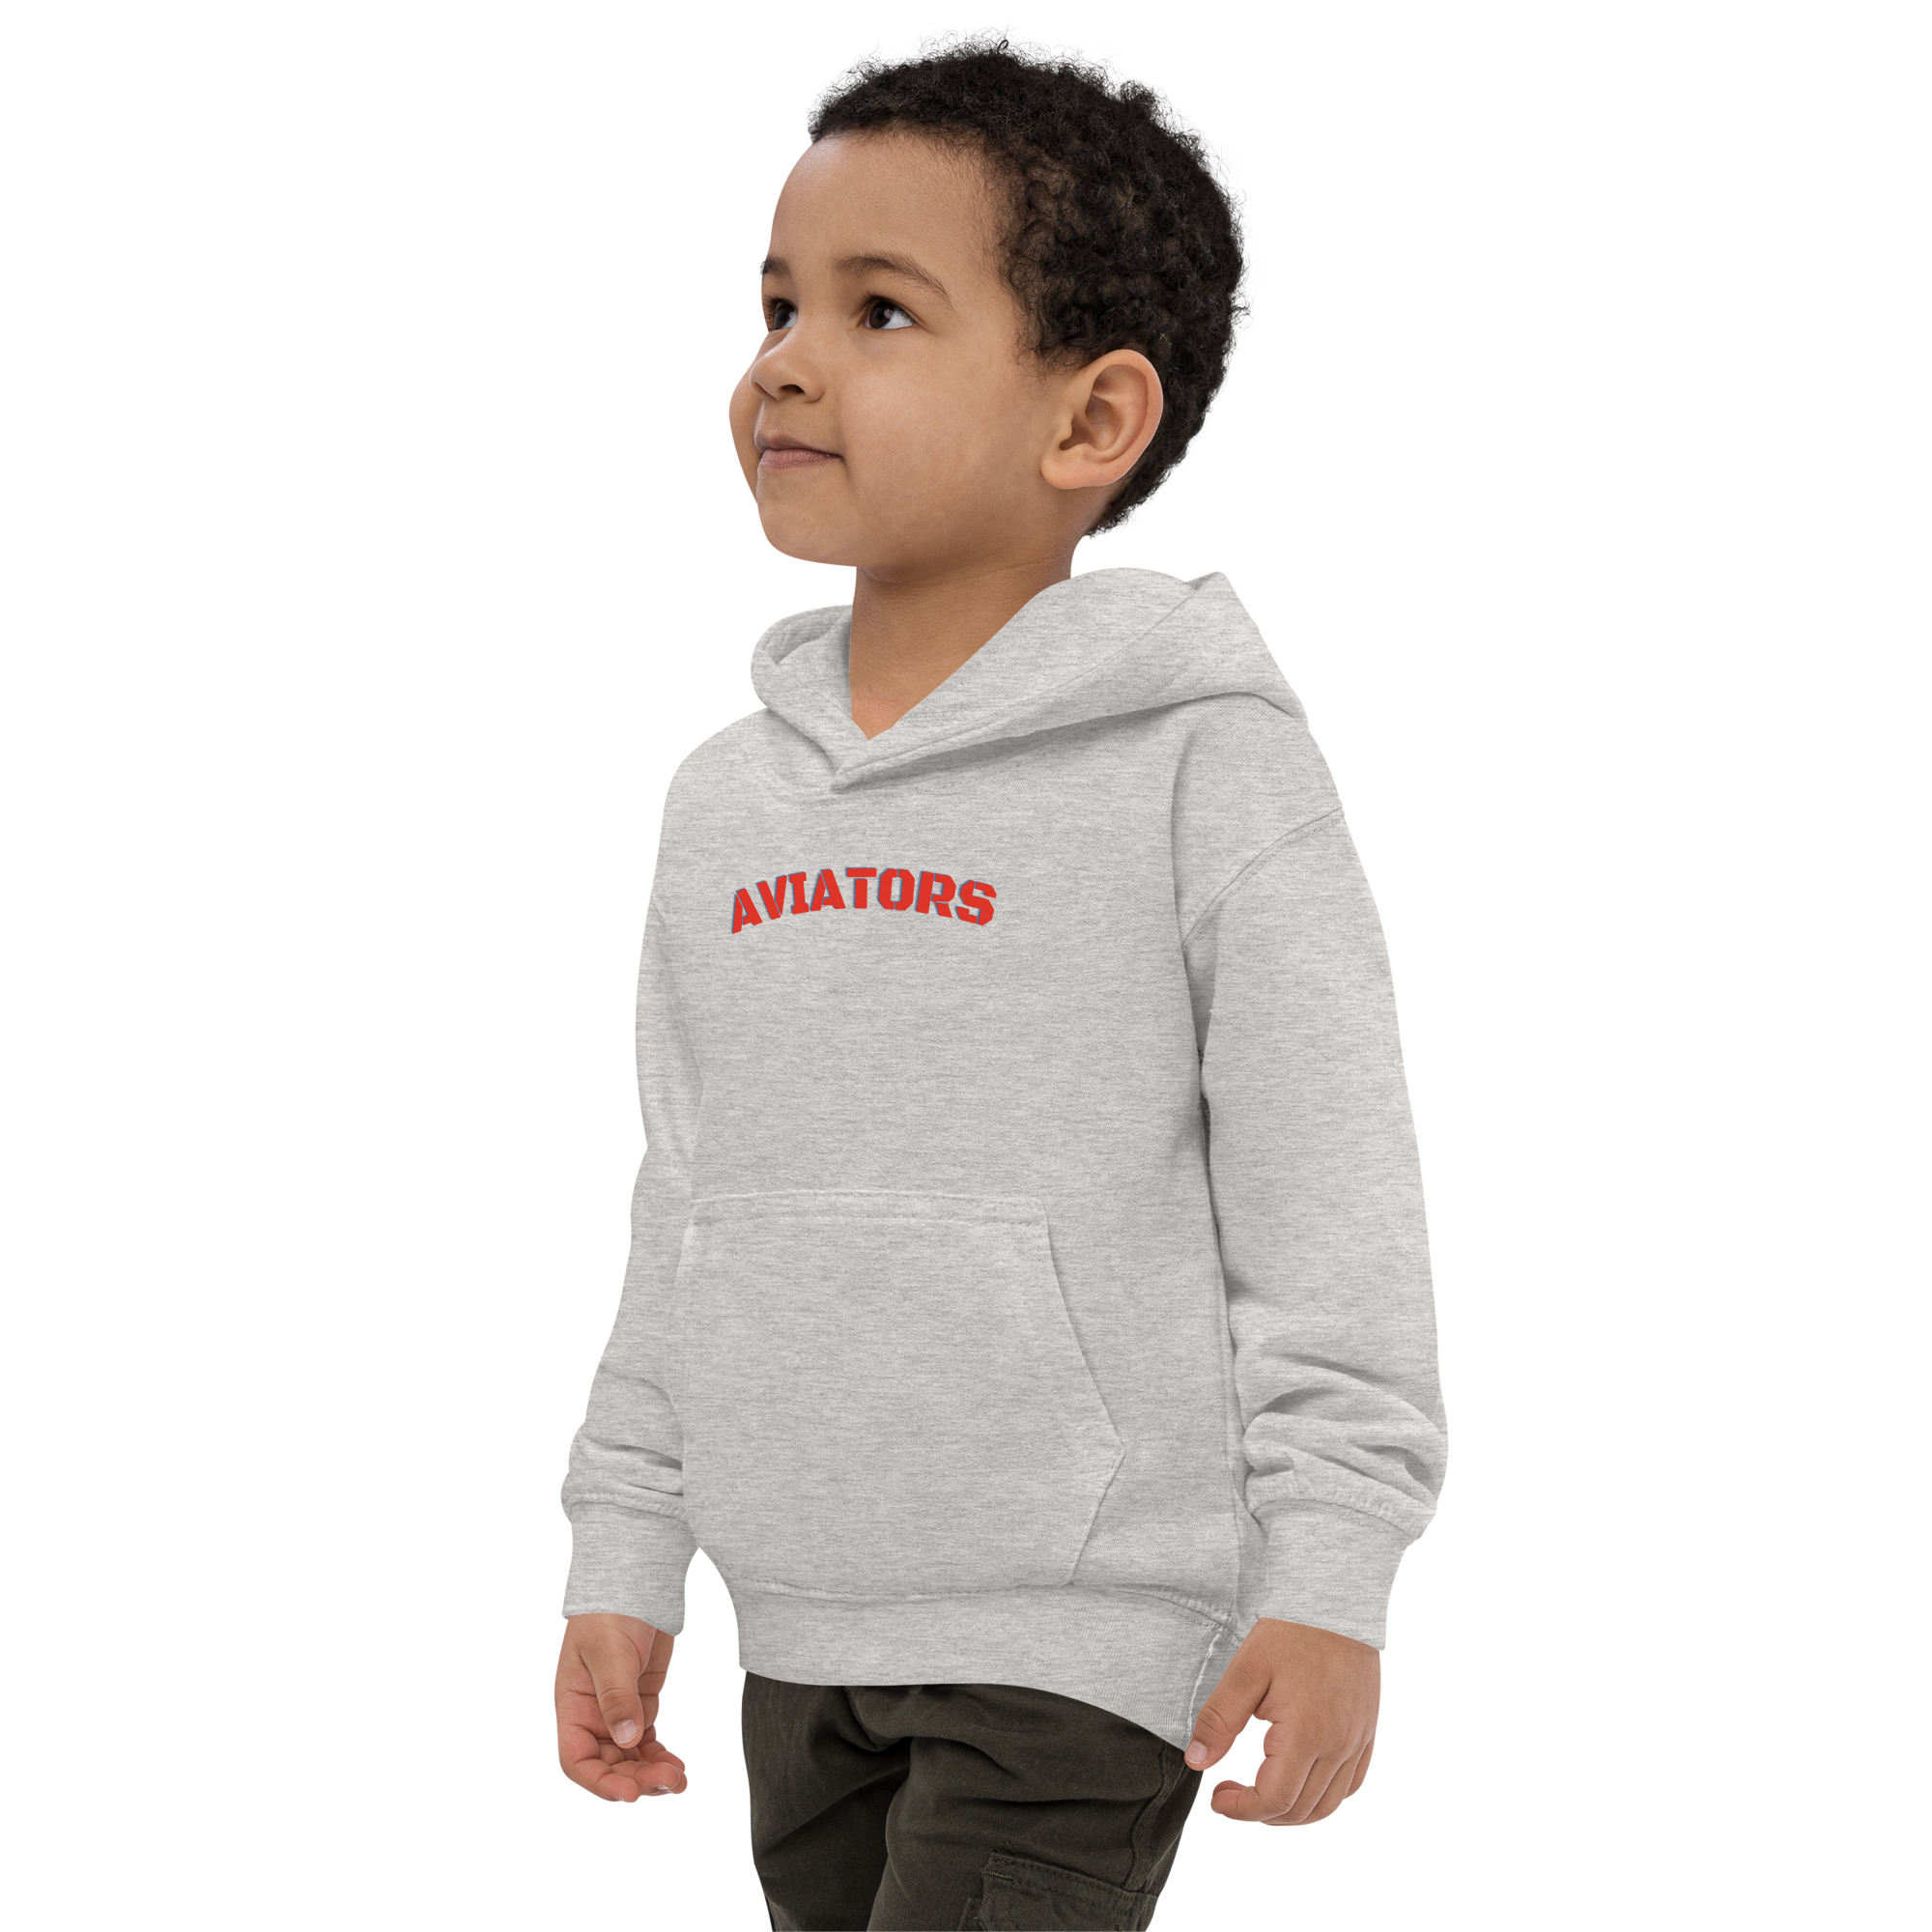  Kid Nation Kids Unisex Double Layer Sleeve Sweatshirt